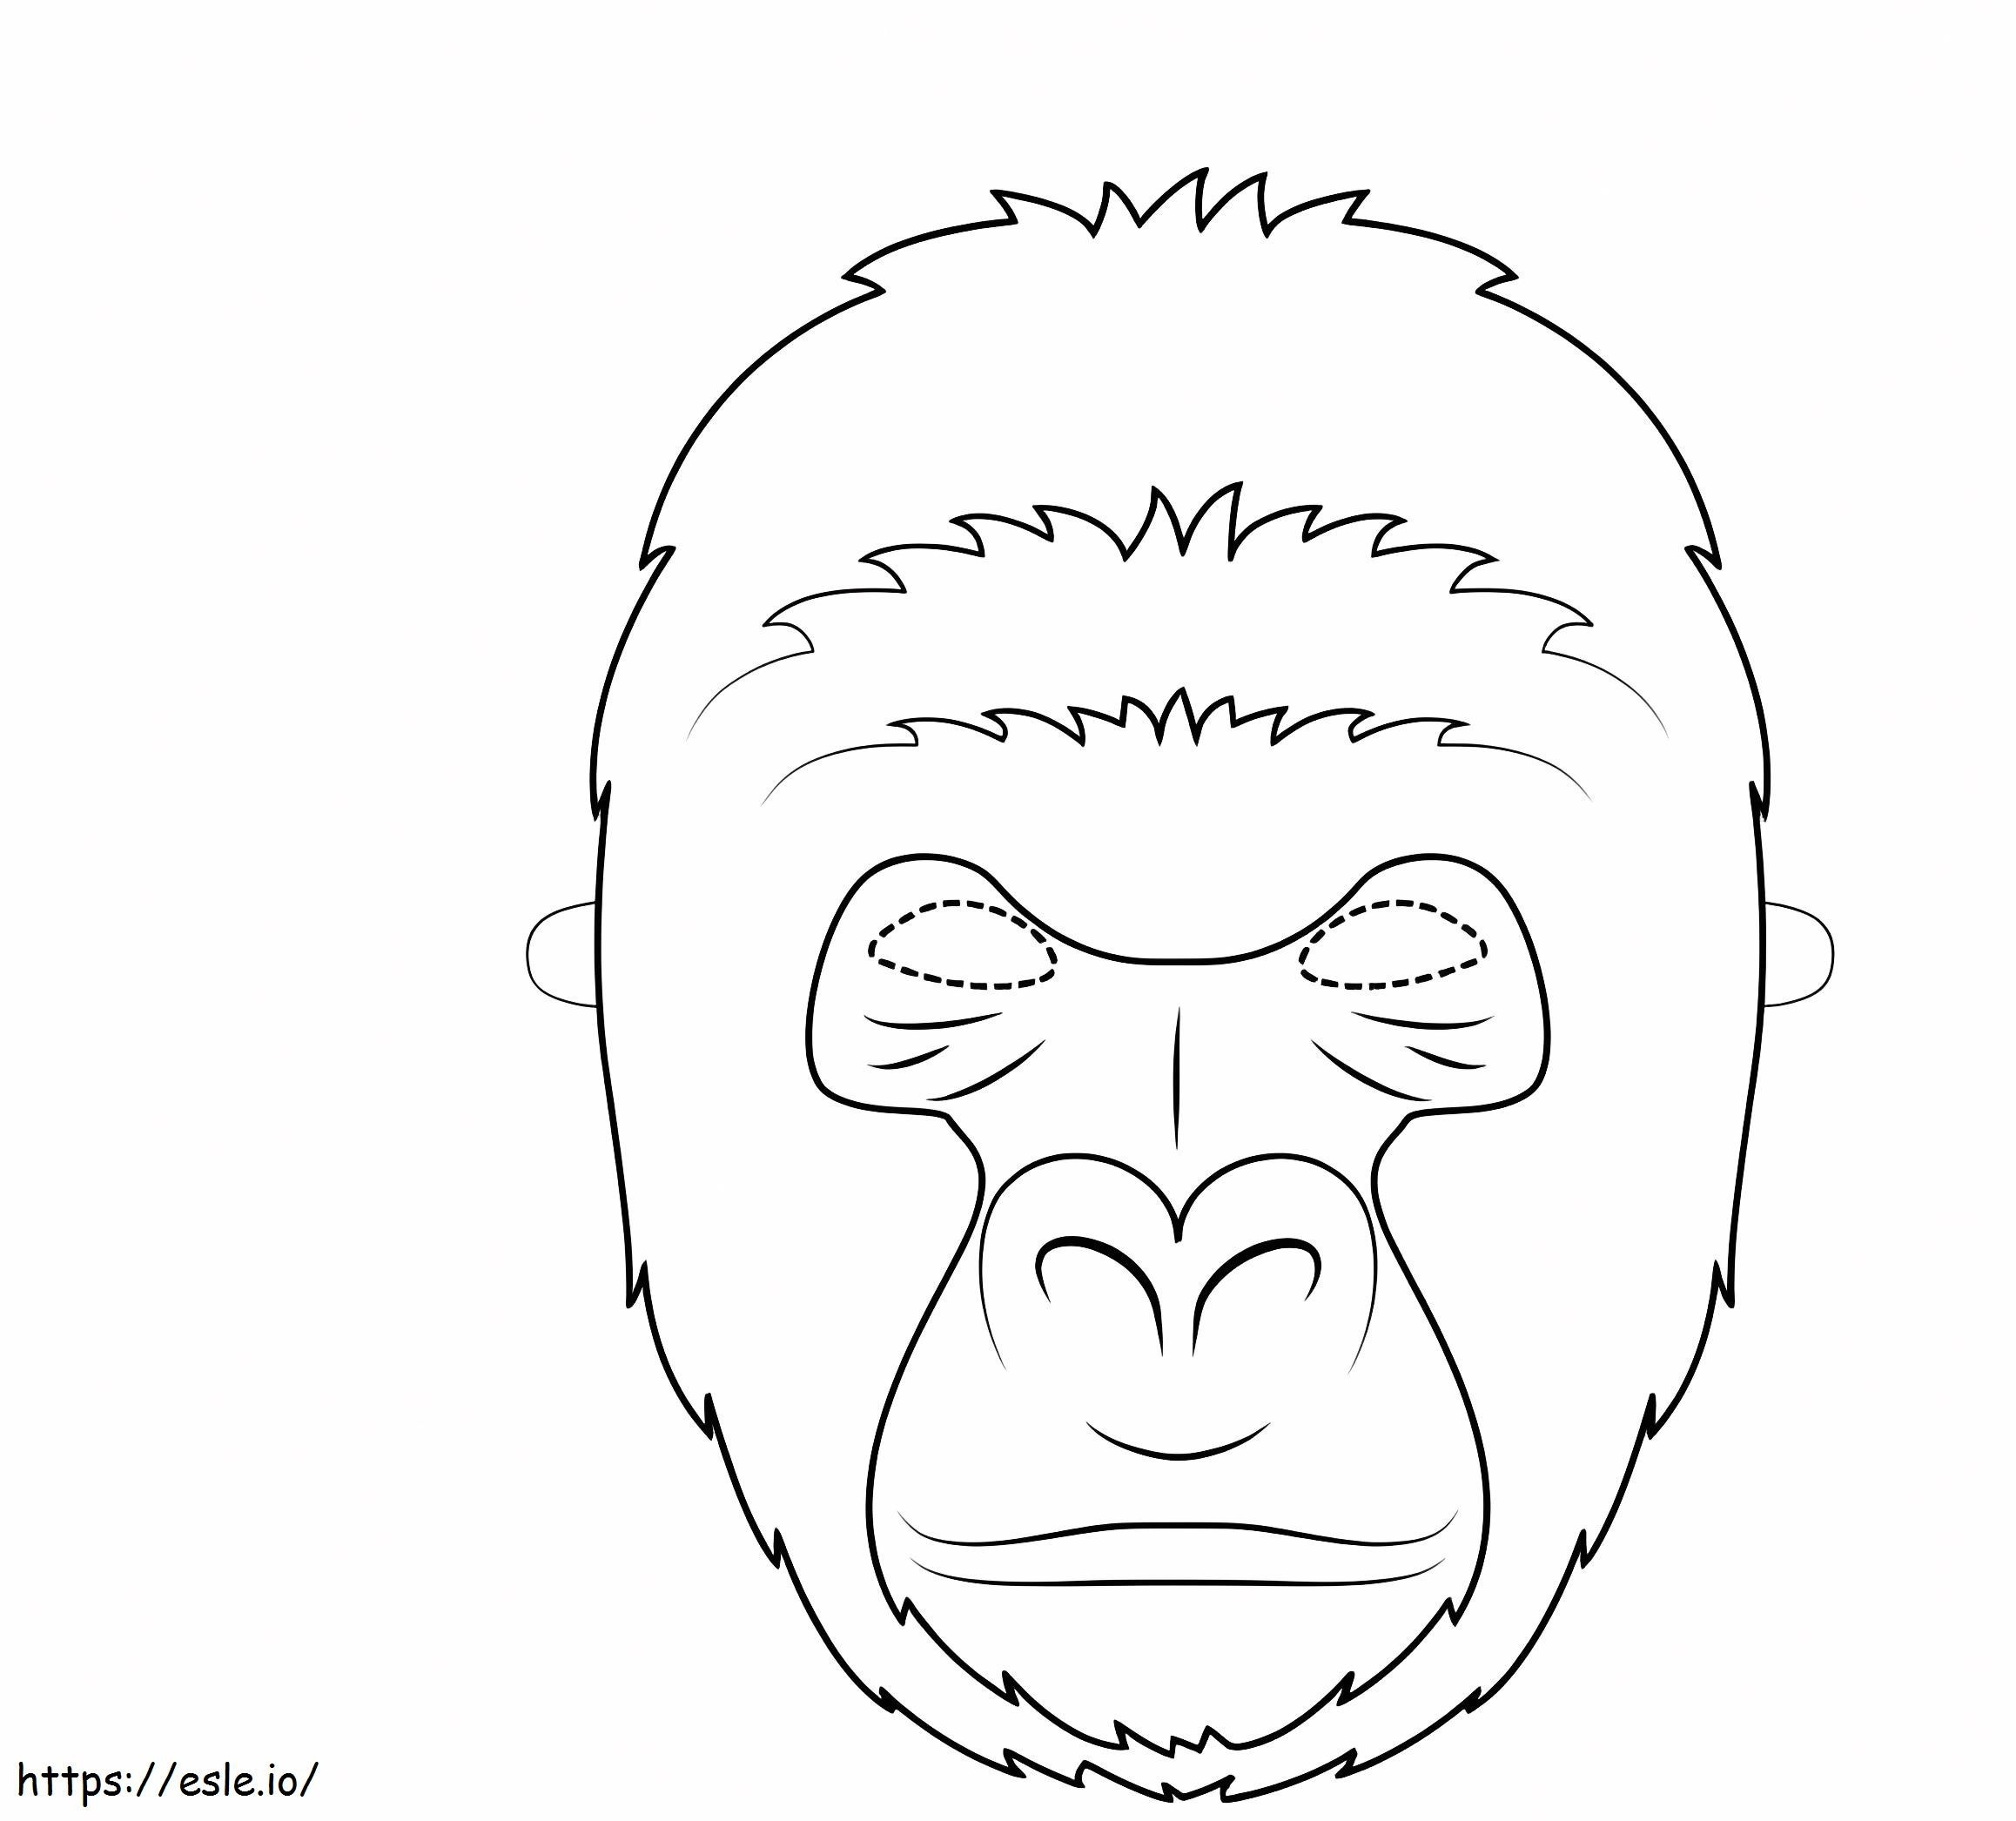 Eine Gorilla-Maske ausmalbilder